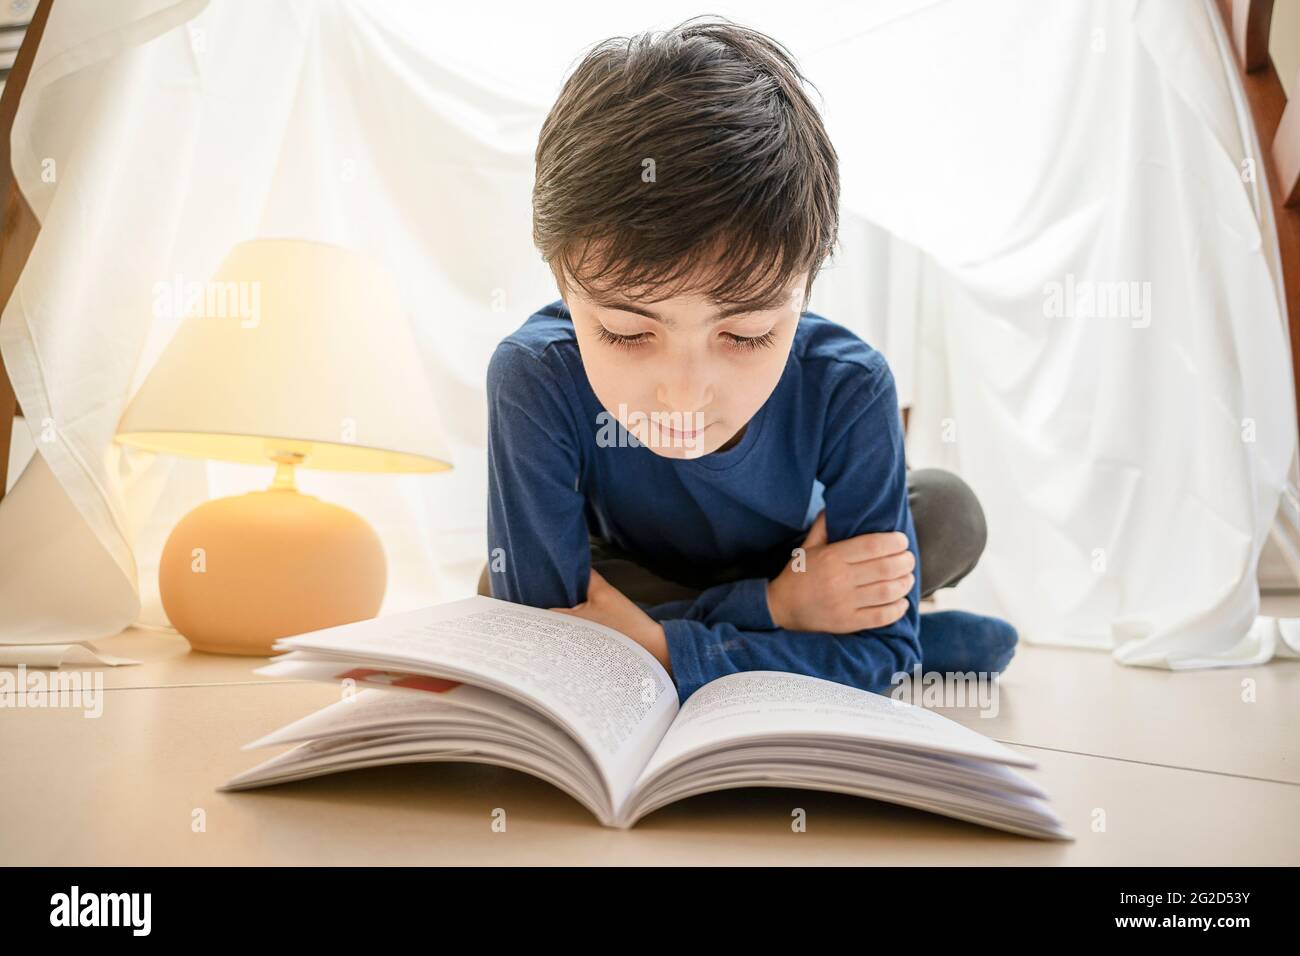 Bezauberndes italienisches kaukasisches Kind, das Buch liest und zu Hause im Zelt liegt Stockfoto